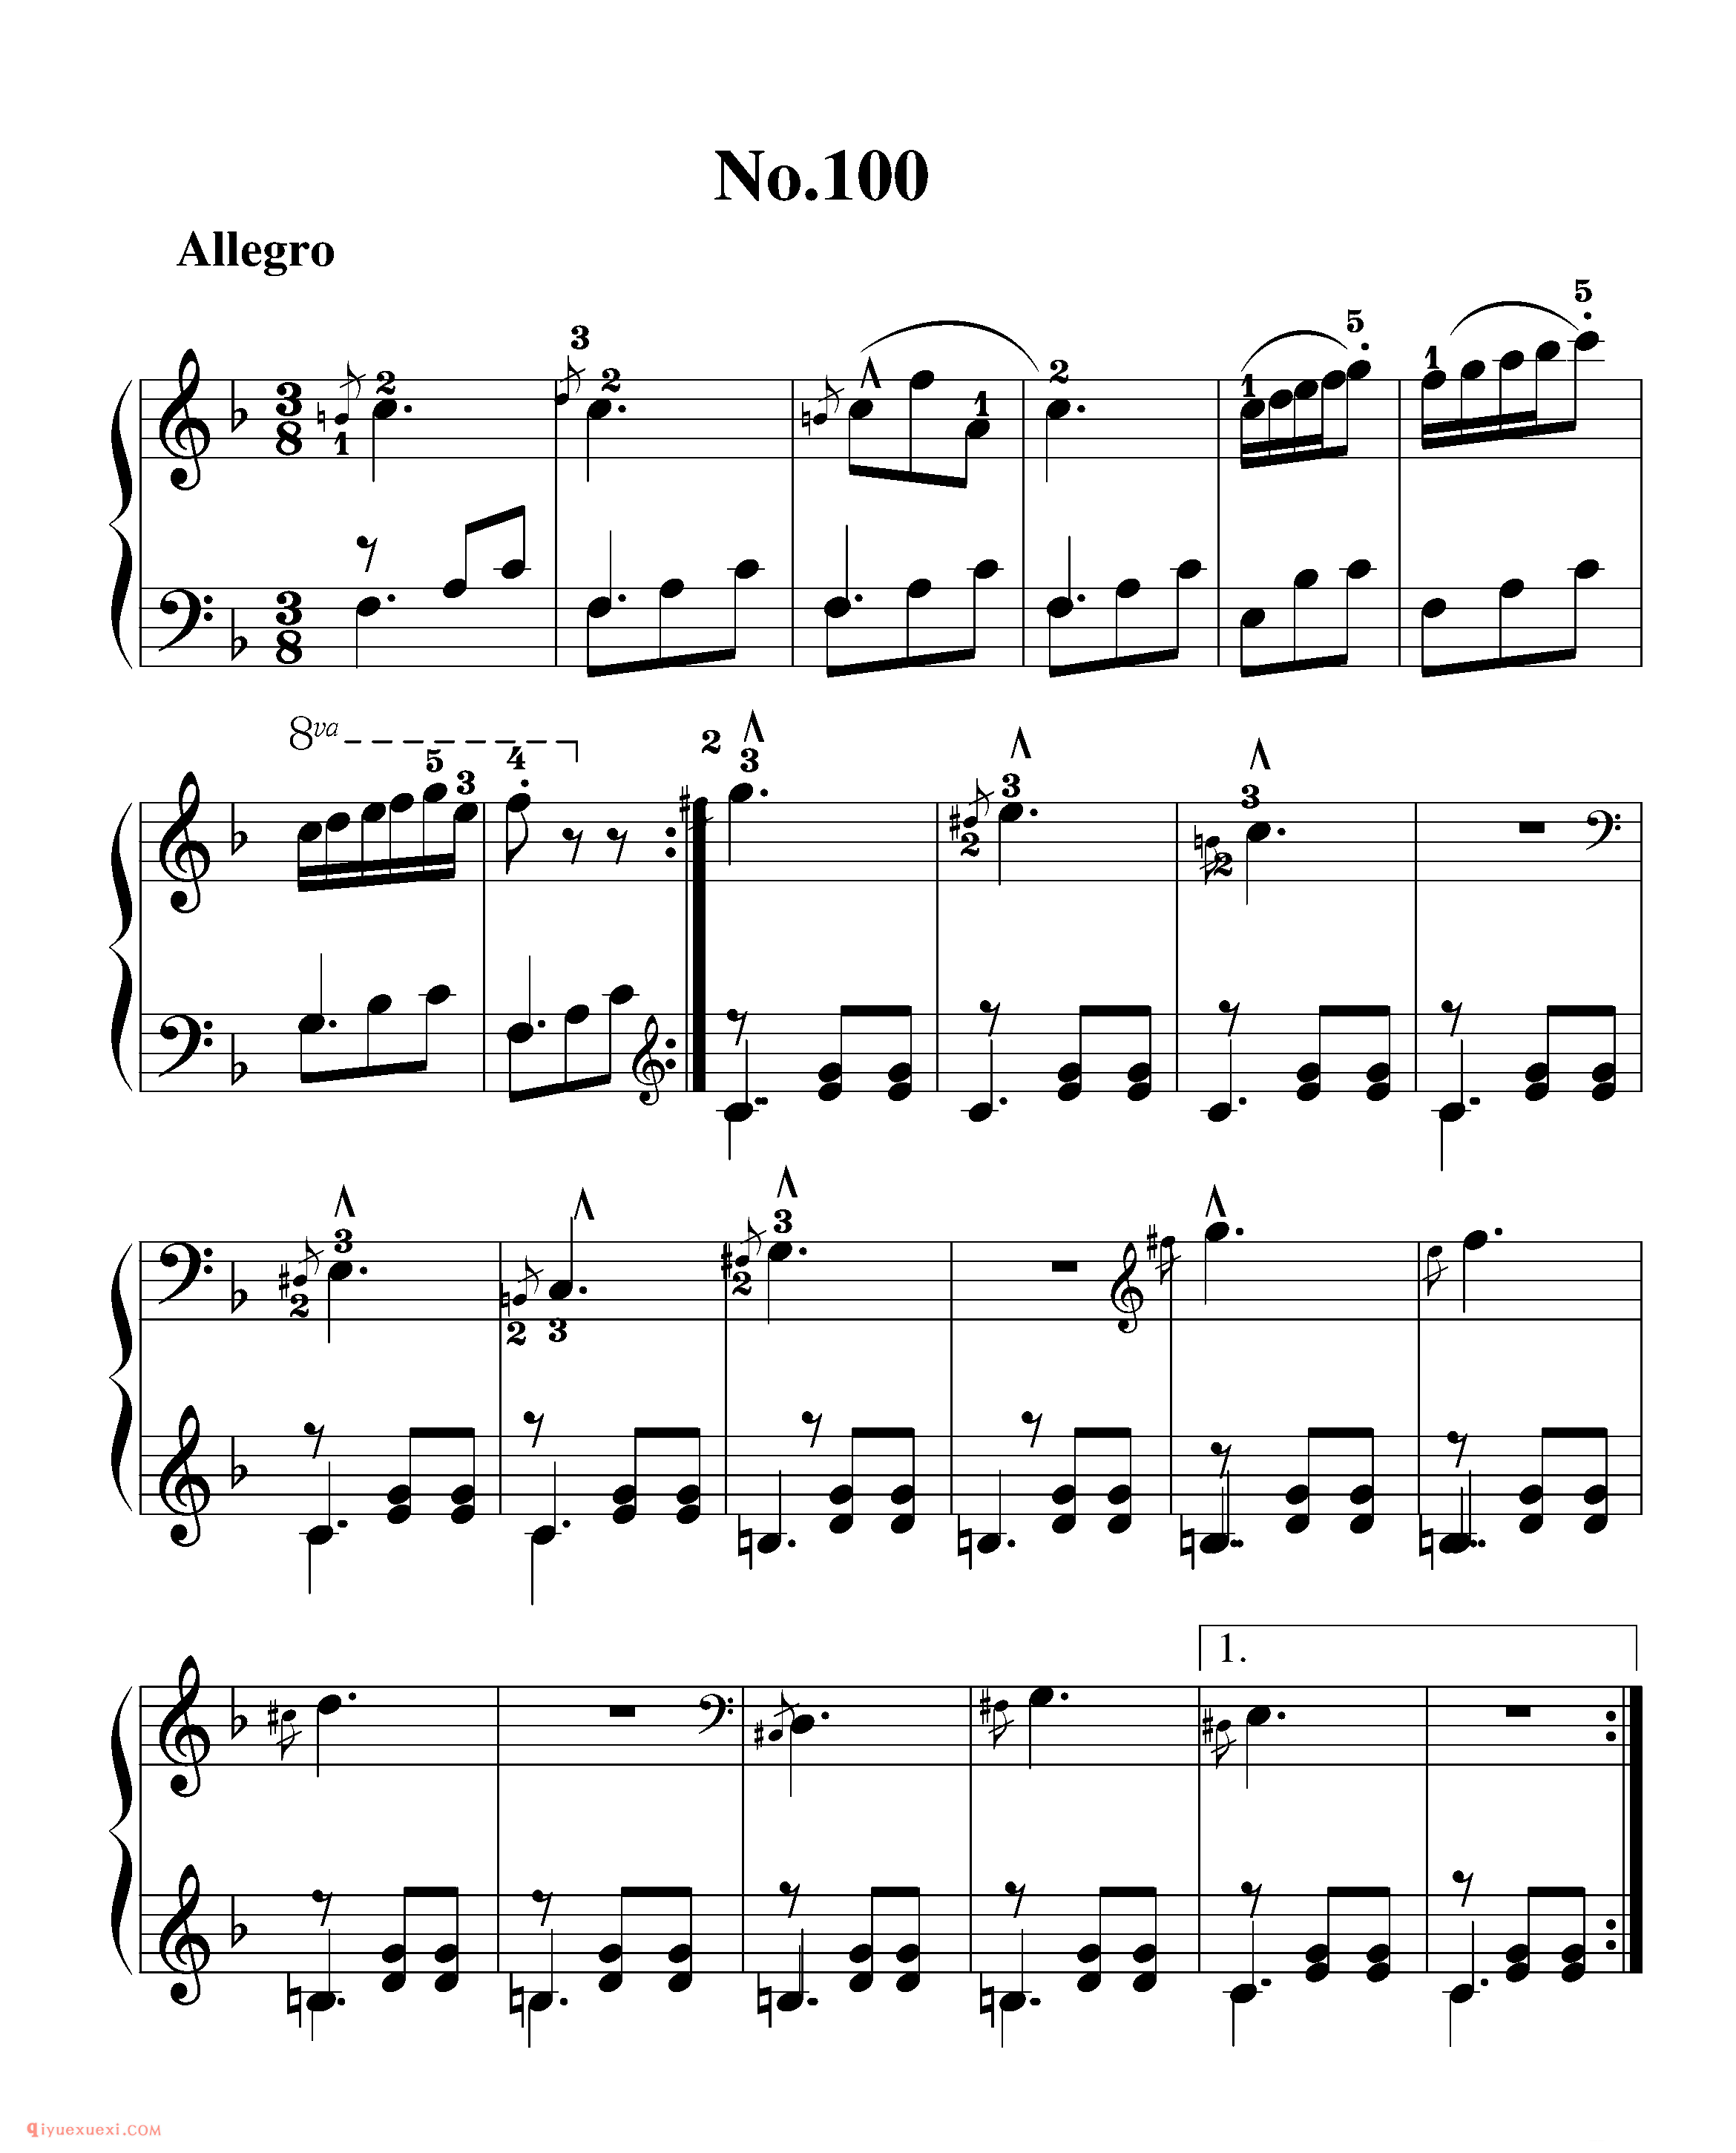 拜厄钢琴练习曲NO.100_拜尔(拜厄)钢琴基本教程练习曲第100首_五线谱